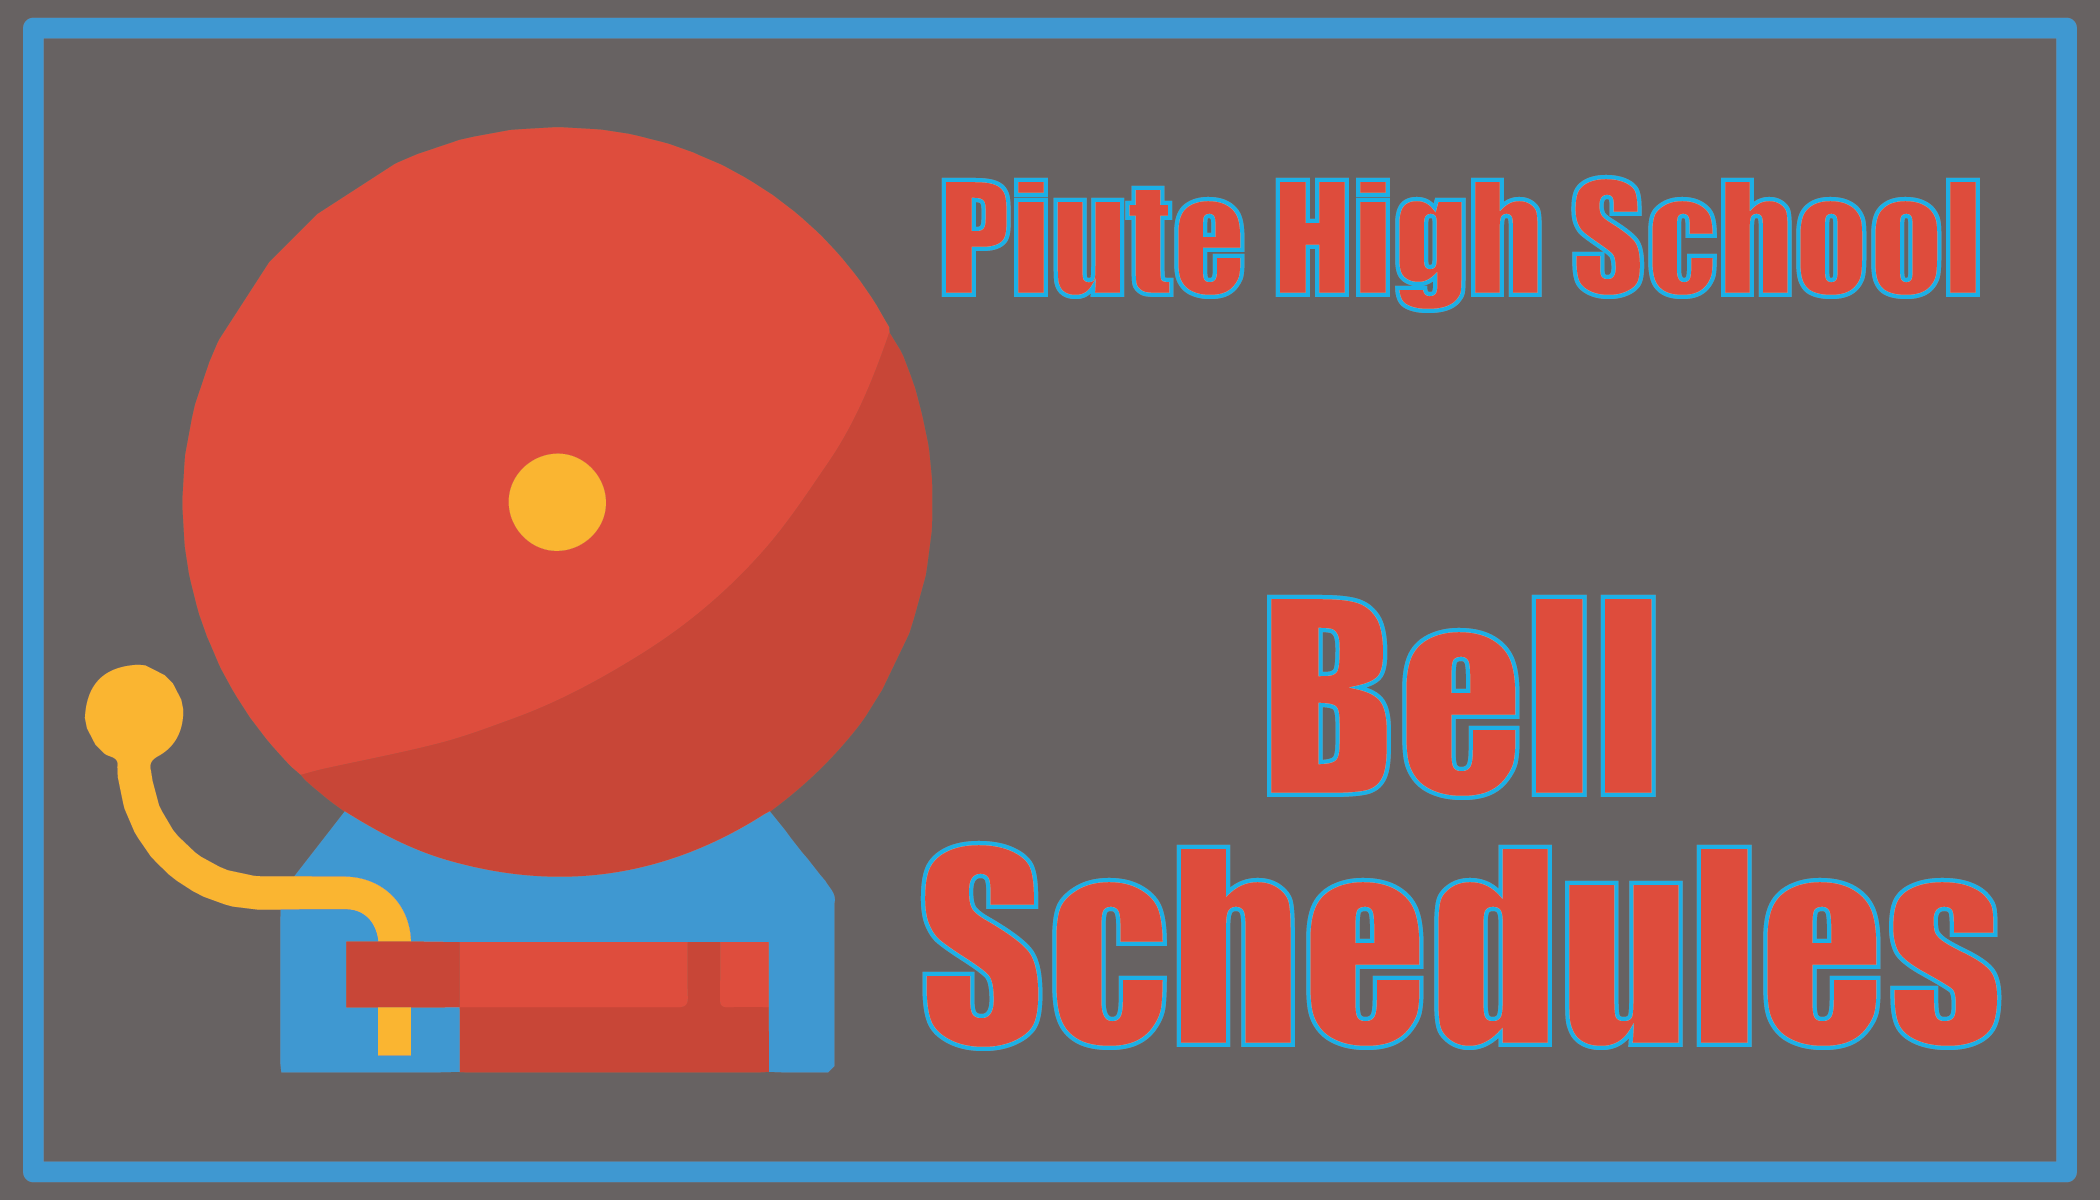 Piute High School Bell Schedule